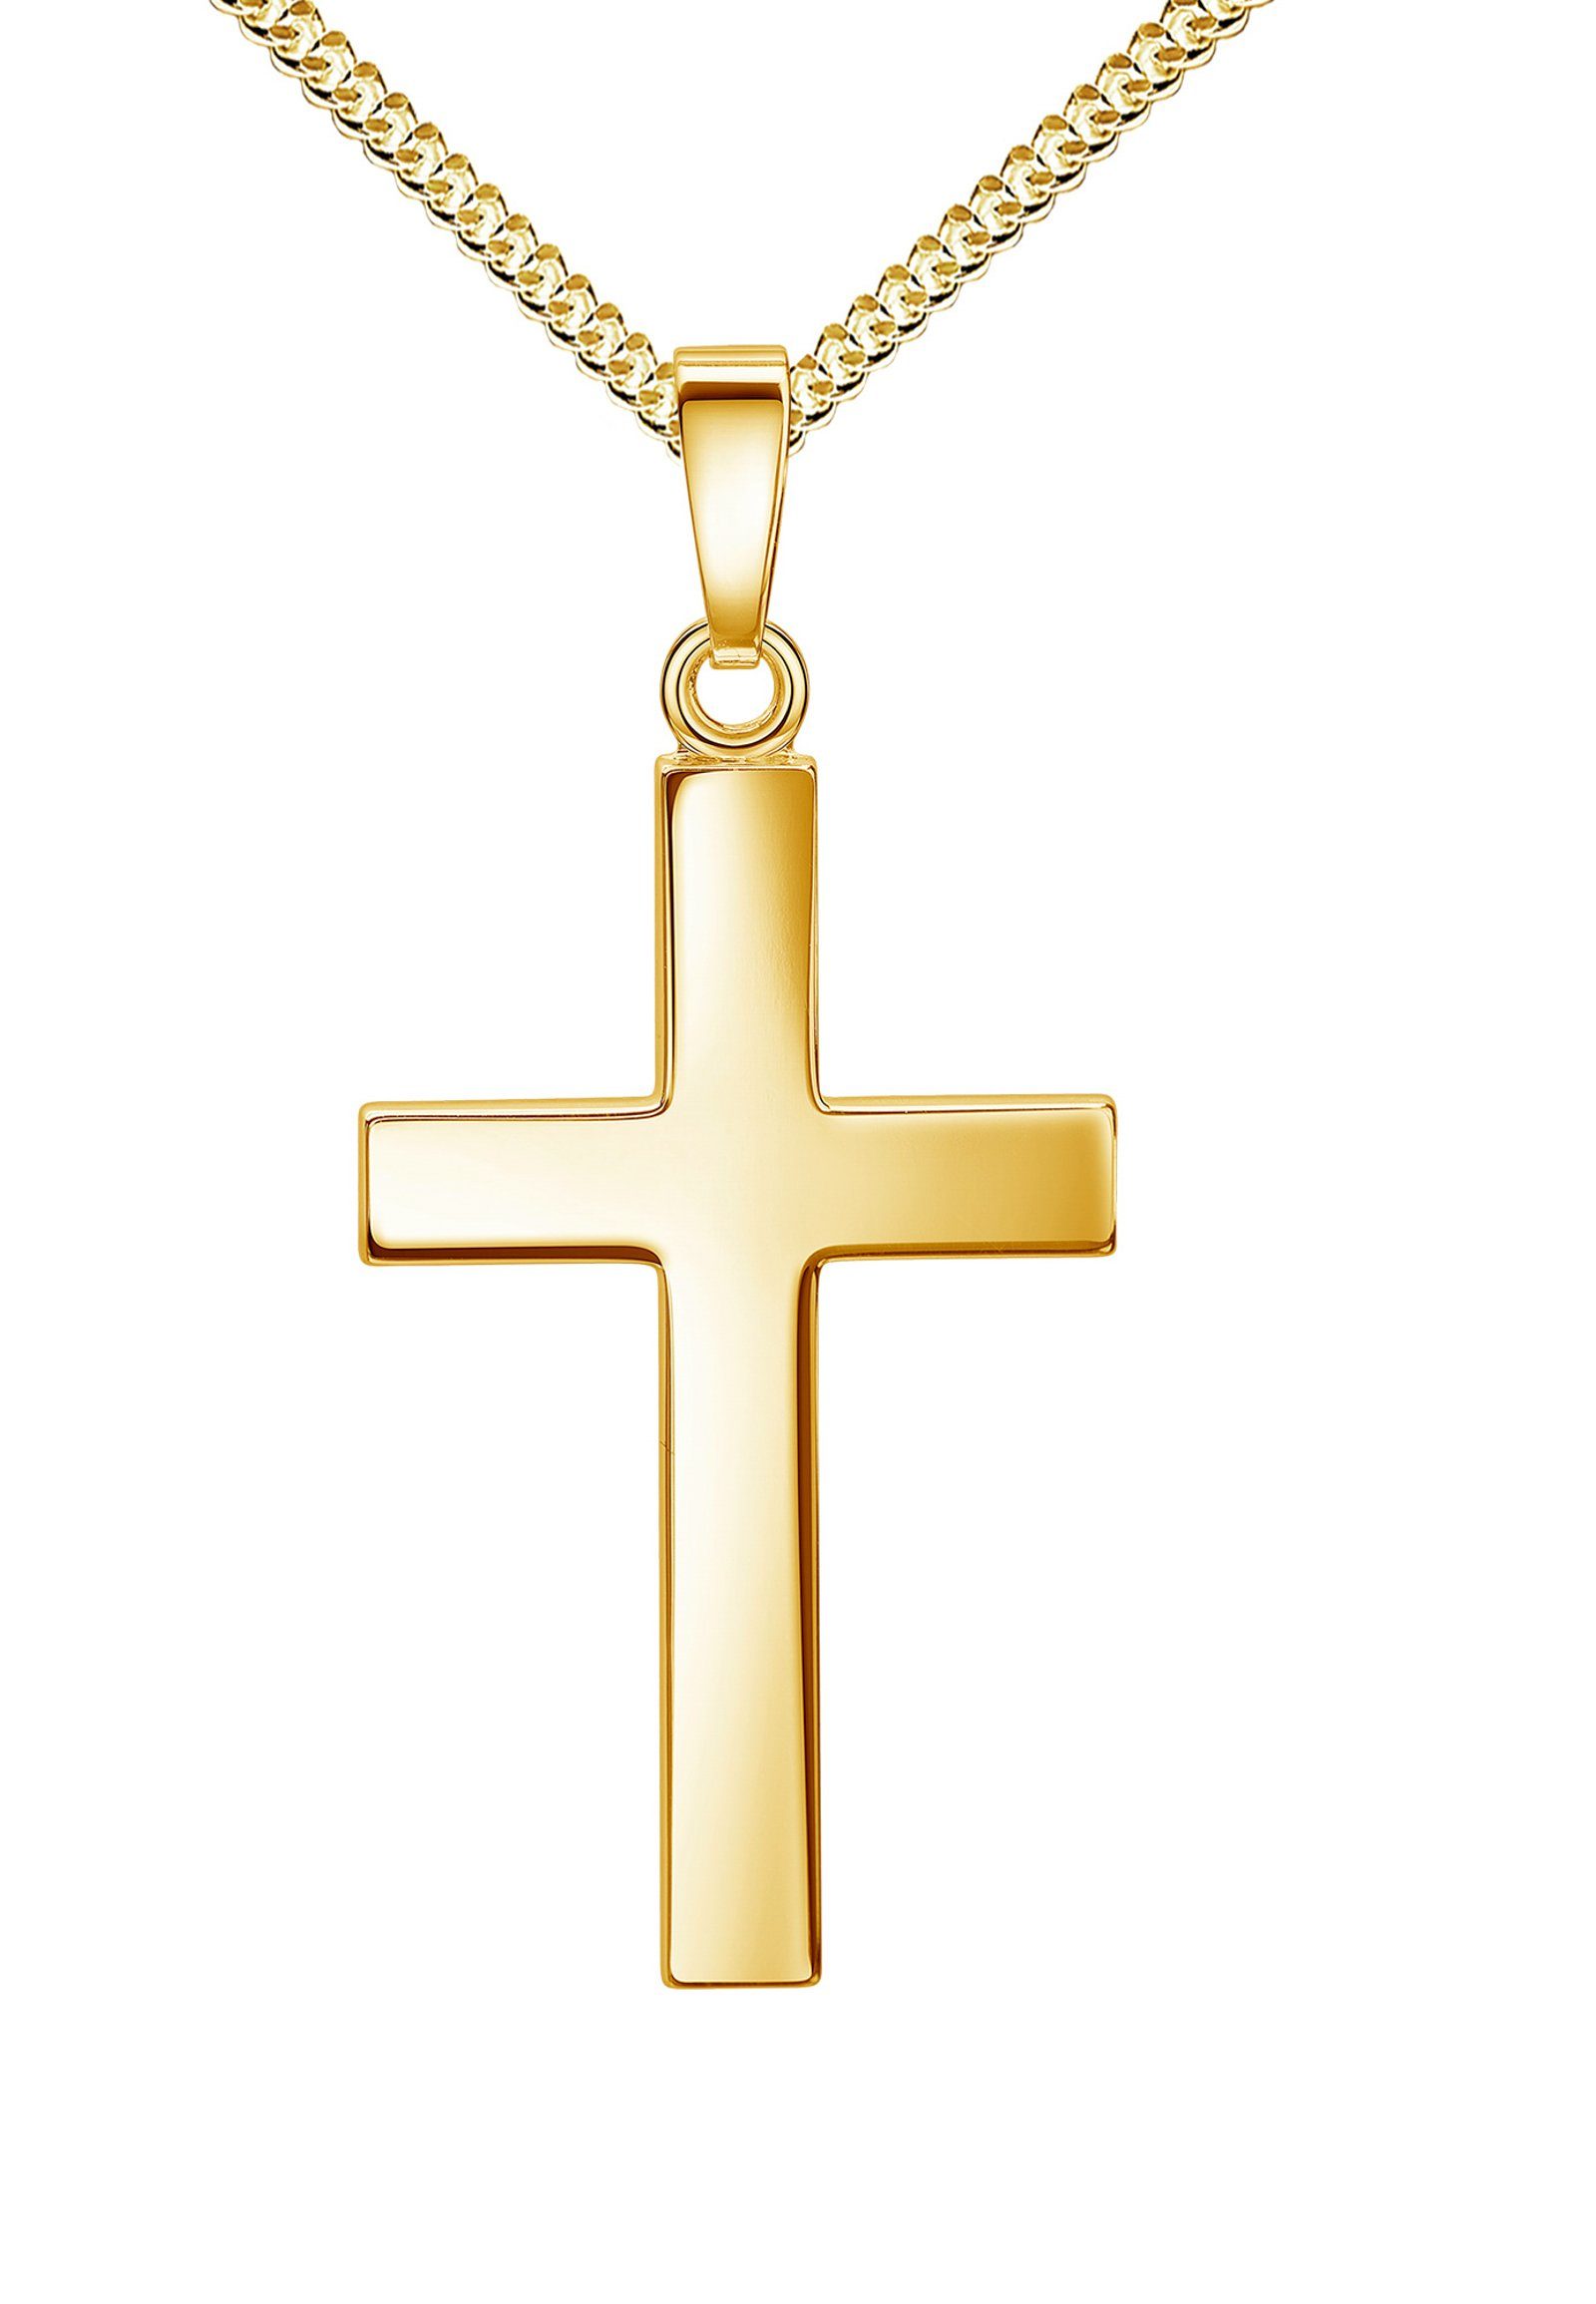 JEVELION Kette mit Anhänger Kreuz-Anhänger aus 585 Gelbgold (Goldkreuz, für Damen), Mit Kette - Länge wählbar 36 - 70 cm. Made in Germany | Ketten mit Anhänger